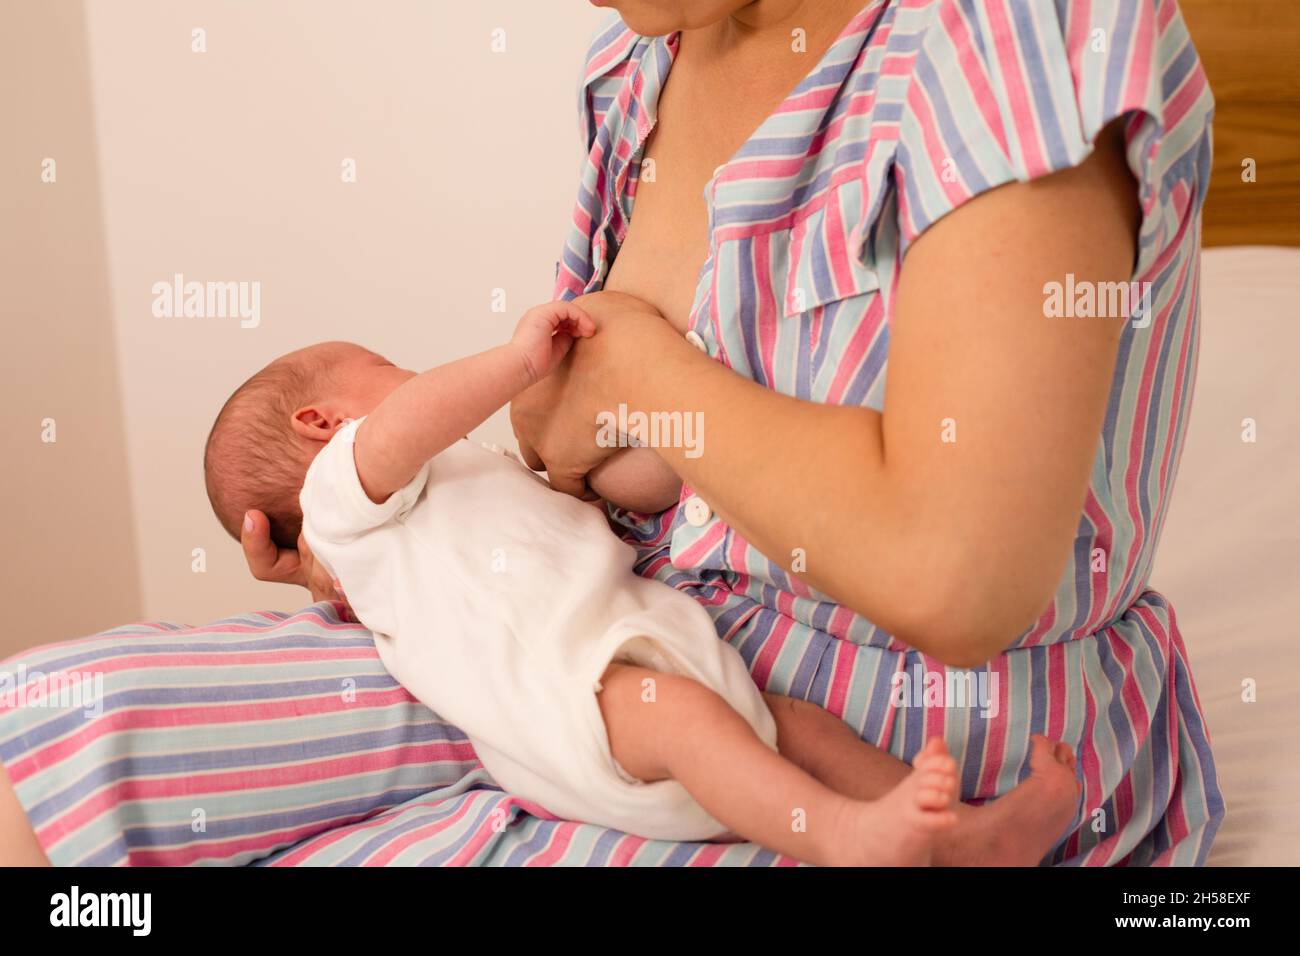 Die junge Mutter möchte ihr neugeborenes Baby stillen Stockfoto